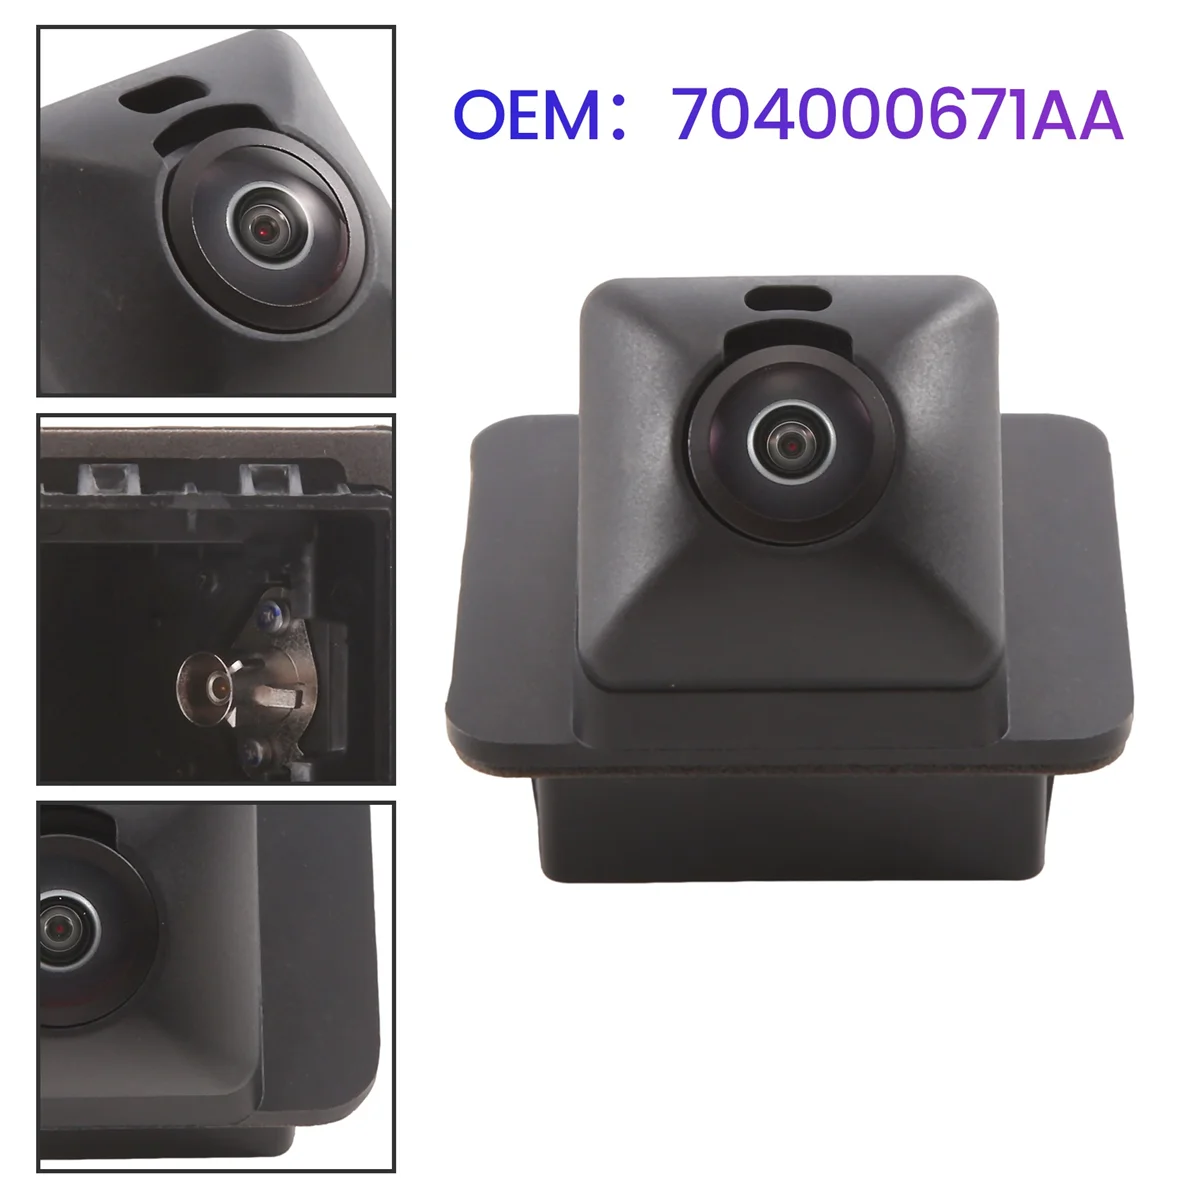 

704000671AA Car Rear View Camera for Chery Tiggo 7 8 Pro Plus